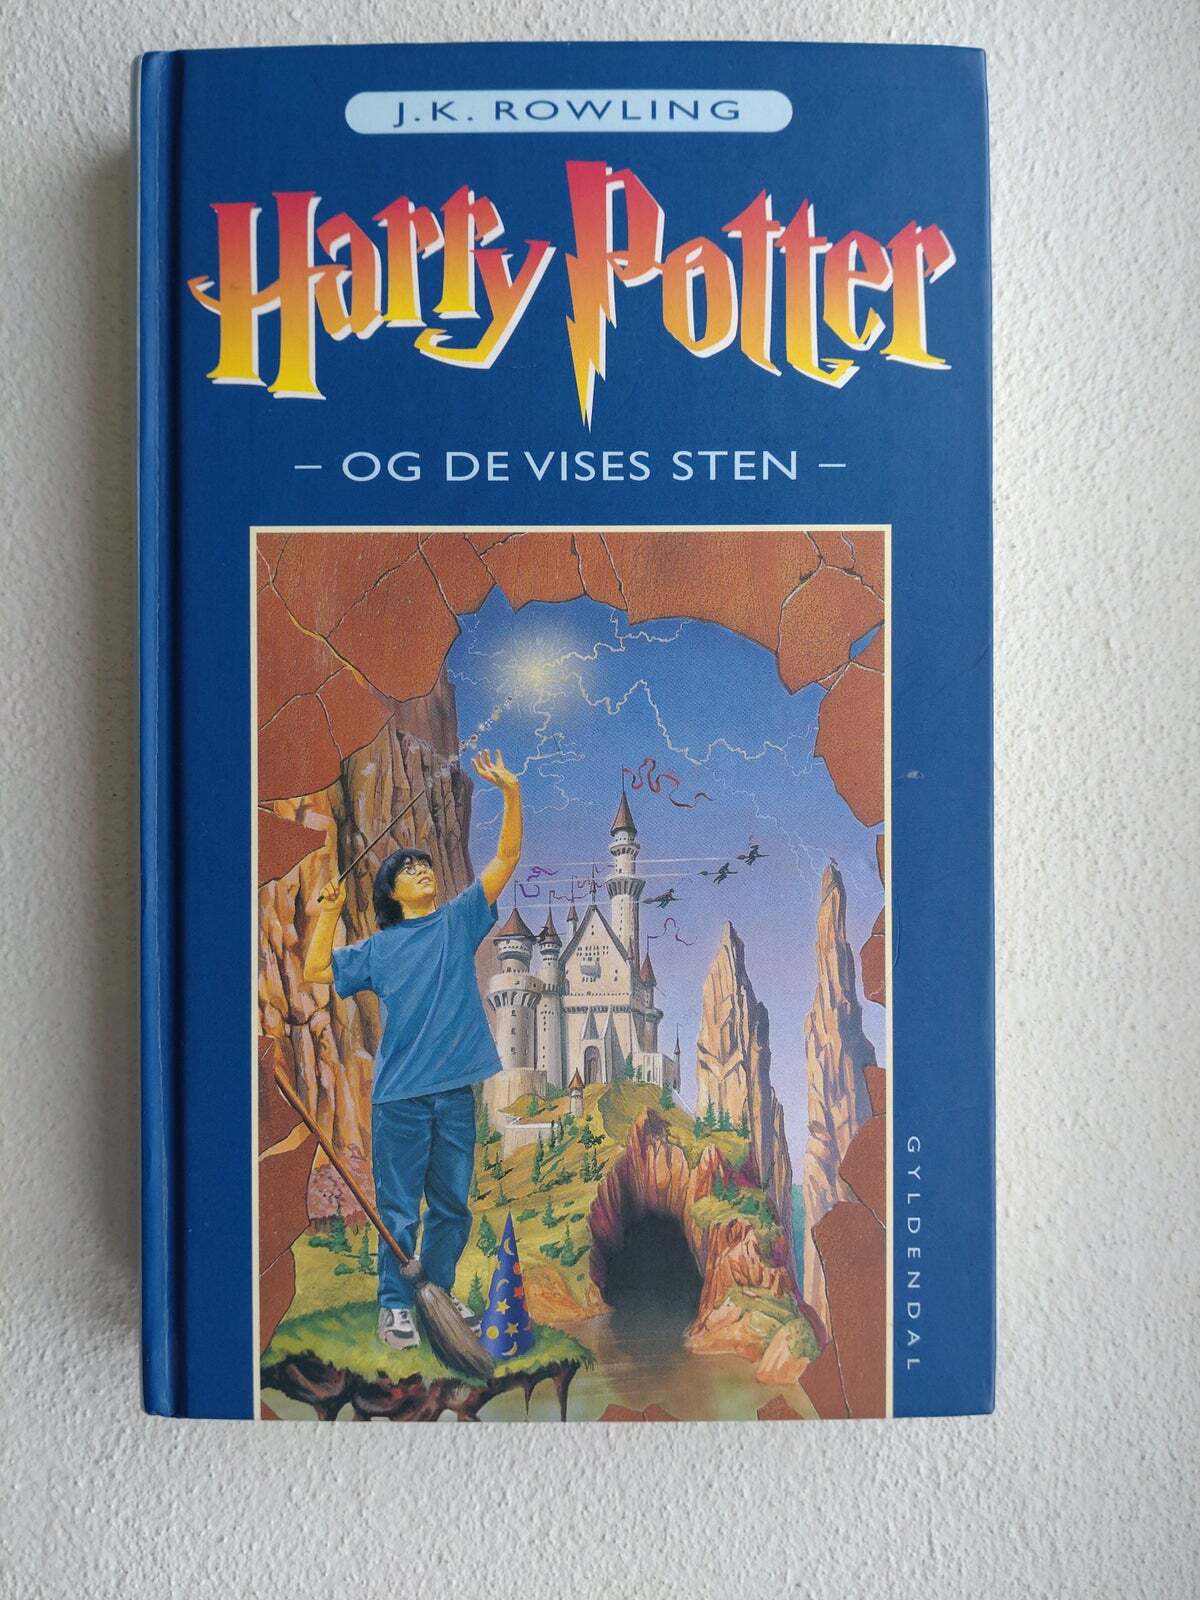 Harry Potter og de vises sten, J.k. Rowling – dba.dk – Køb og Salg Nyt Brugt